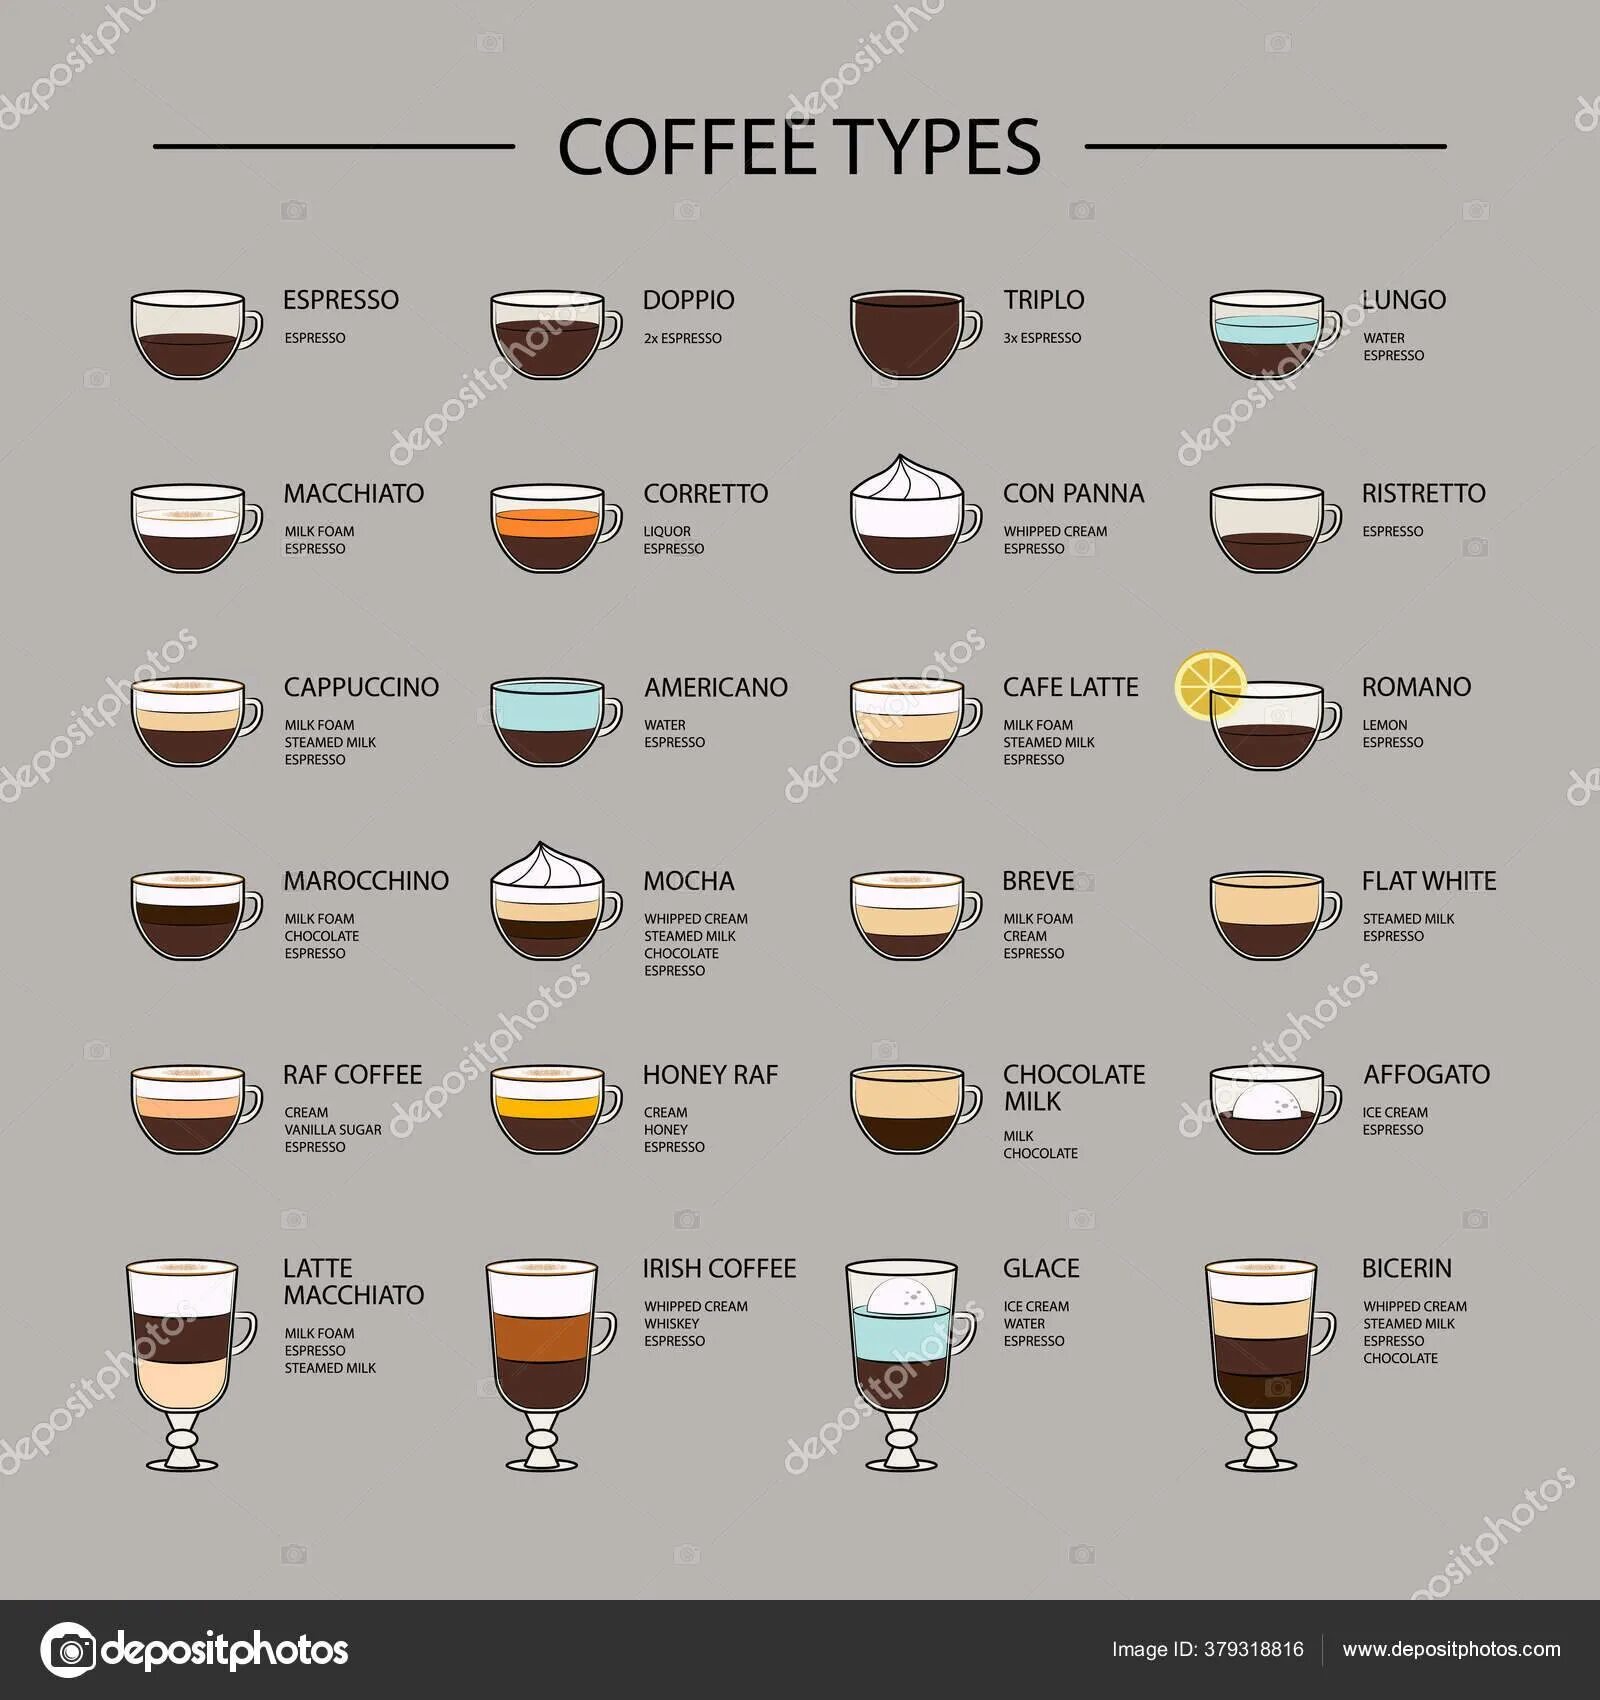 Крепость кофе в кофемашине. Виды кофе американо эспрессо капучино латте. Рецептура латте для кофемашины. Пропорции разных видов кофе. Пропорции приготовления латте макиато.